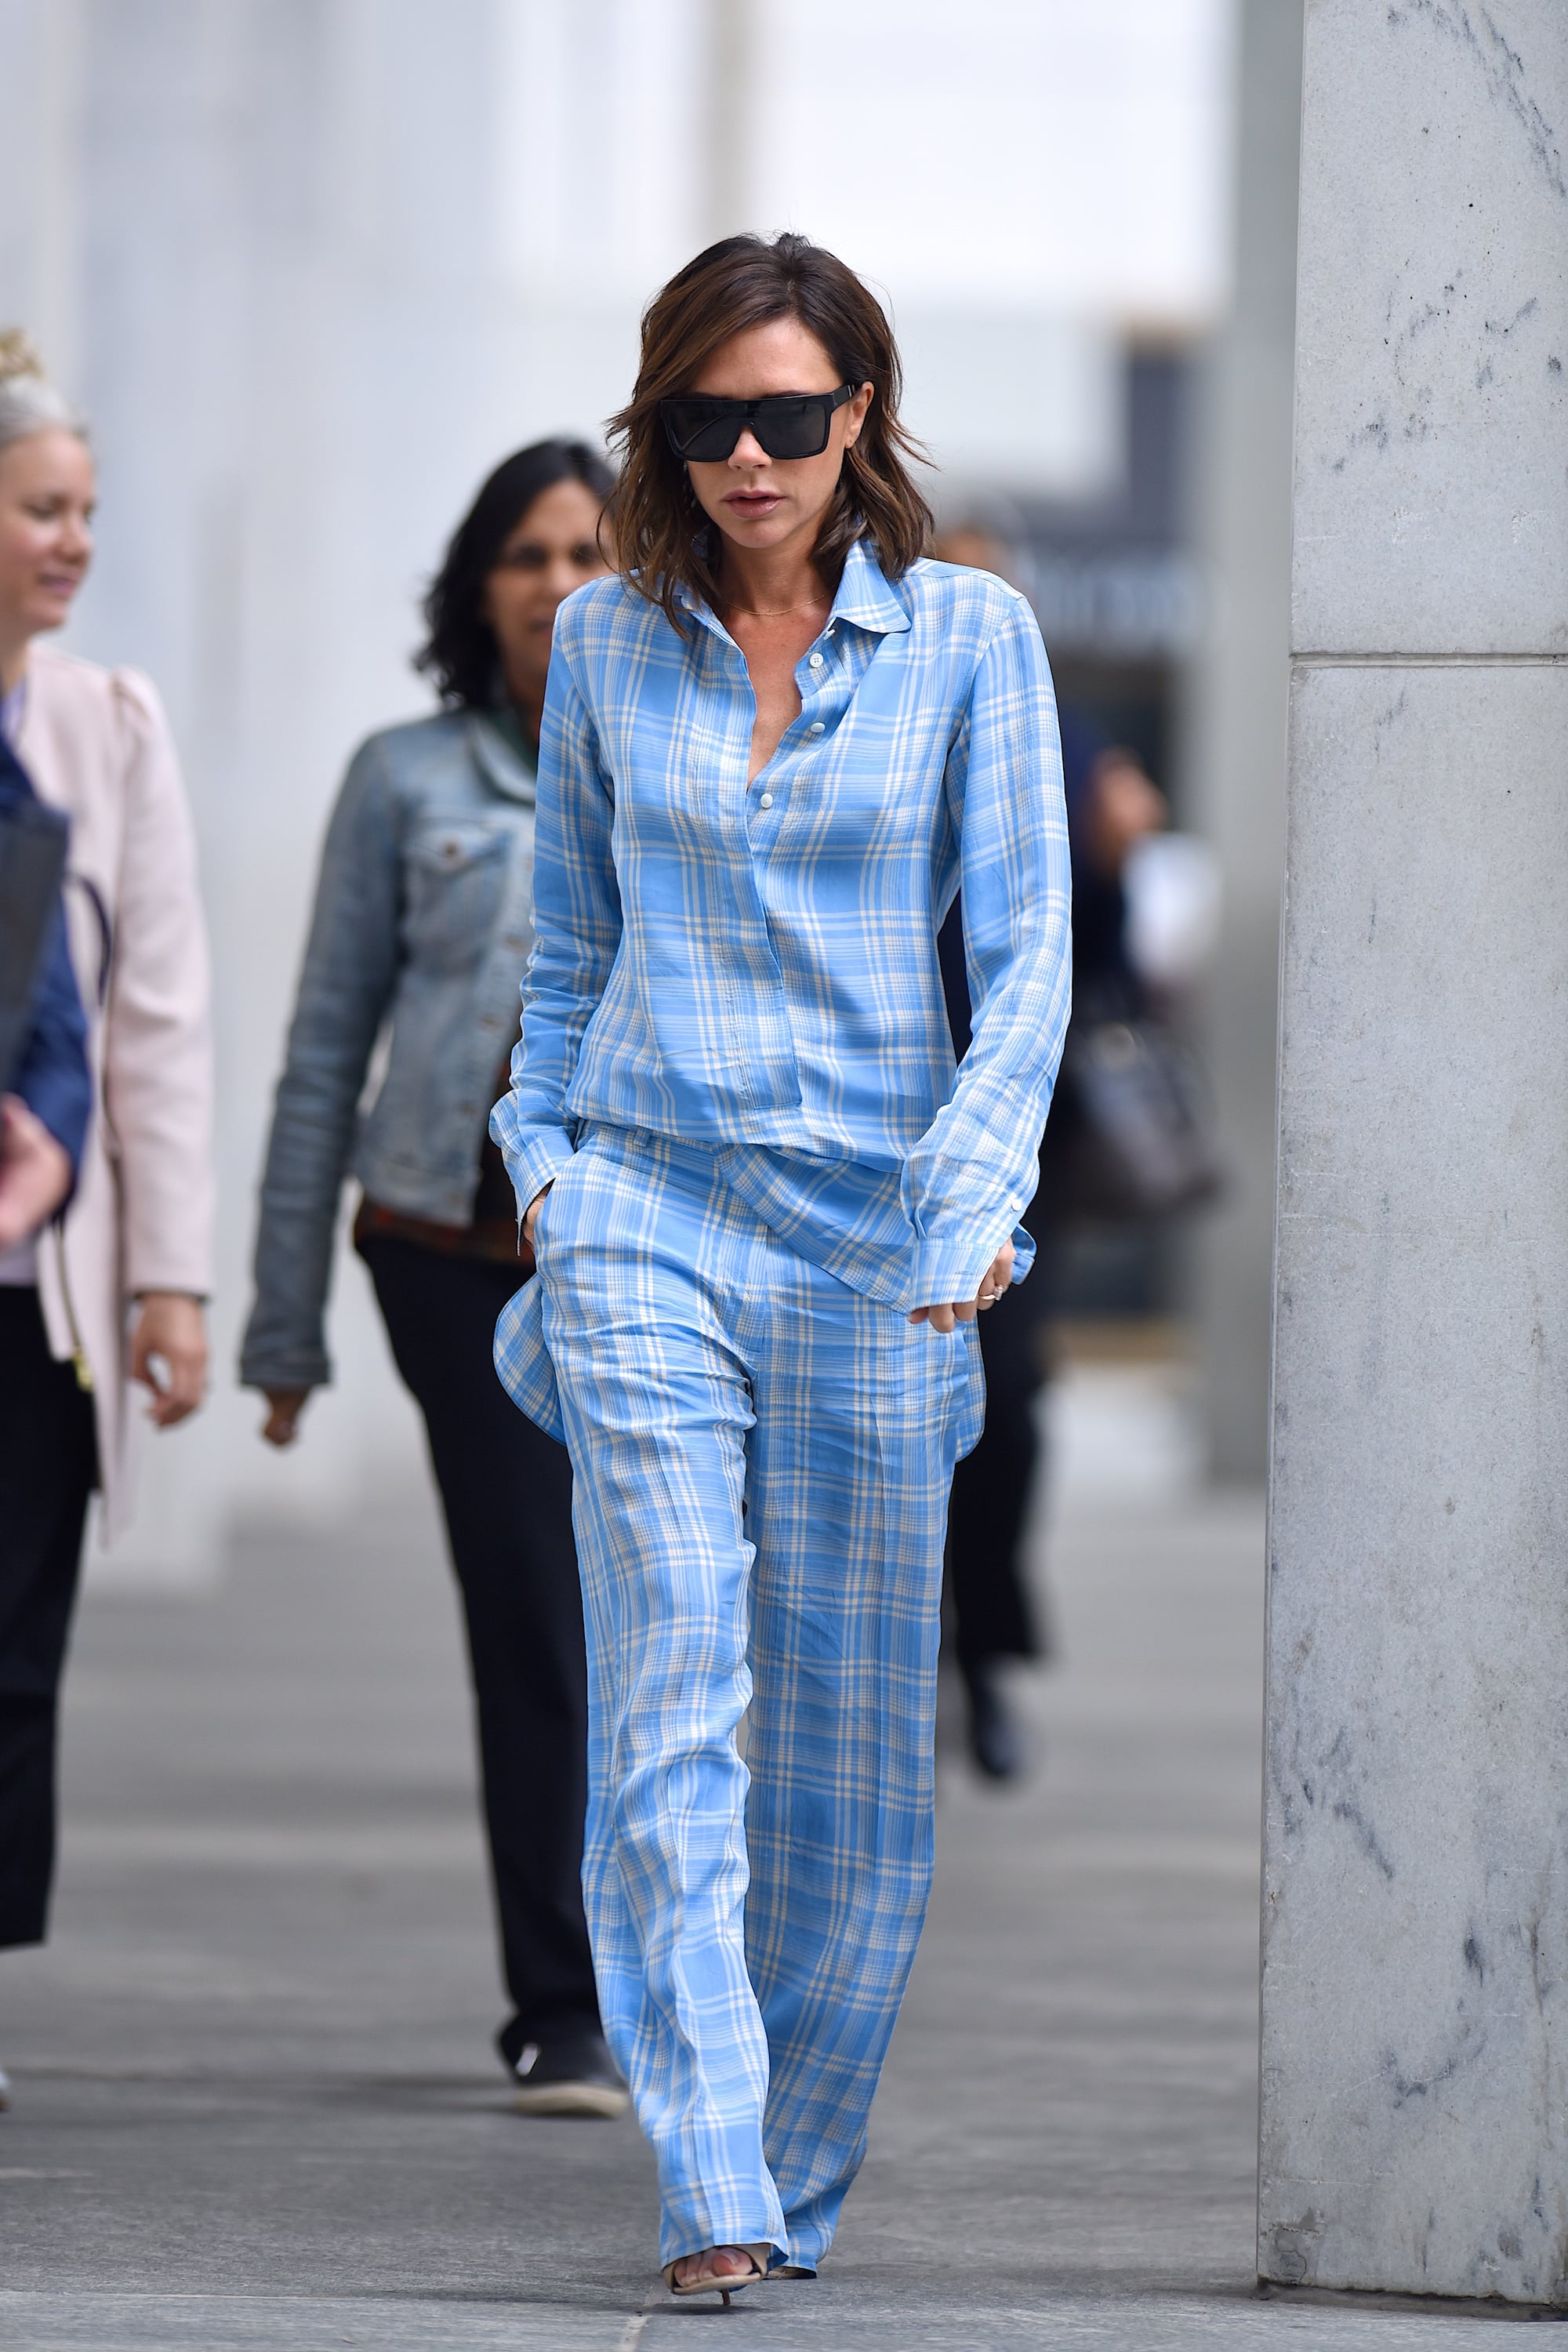 Victoria Beckham's Blue Plaid Outfit